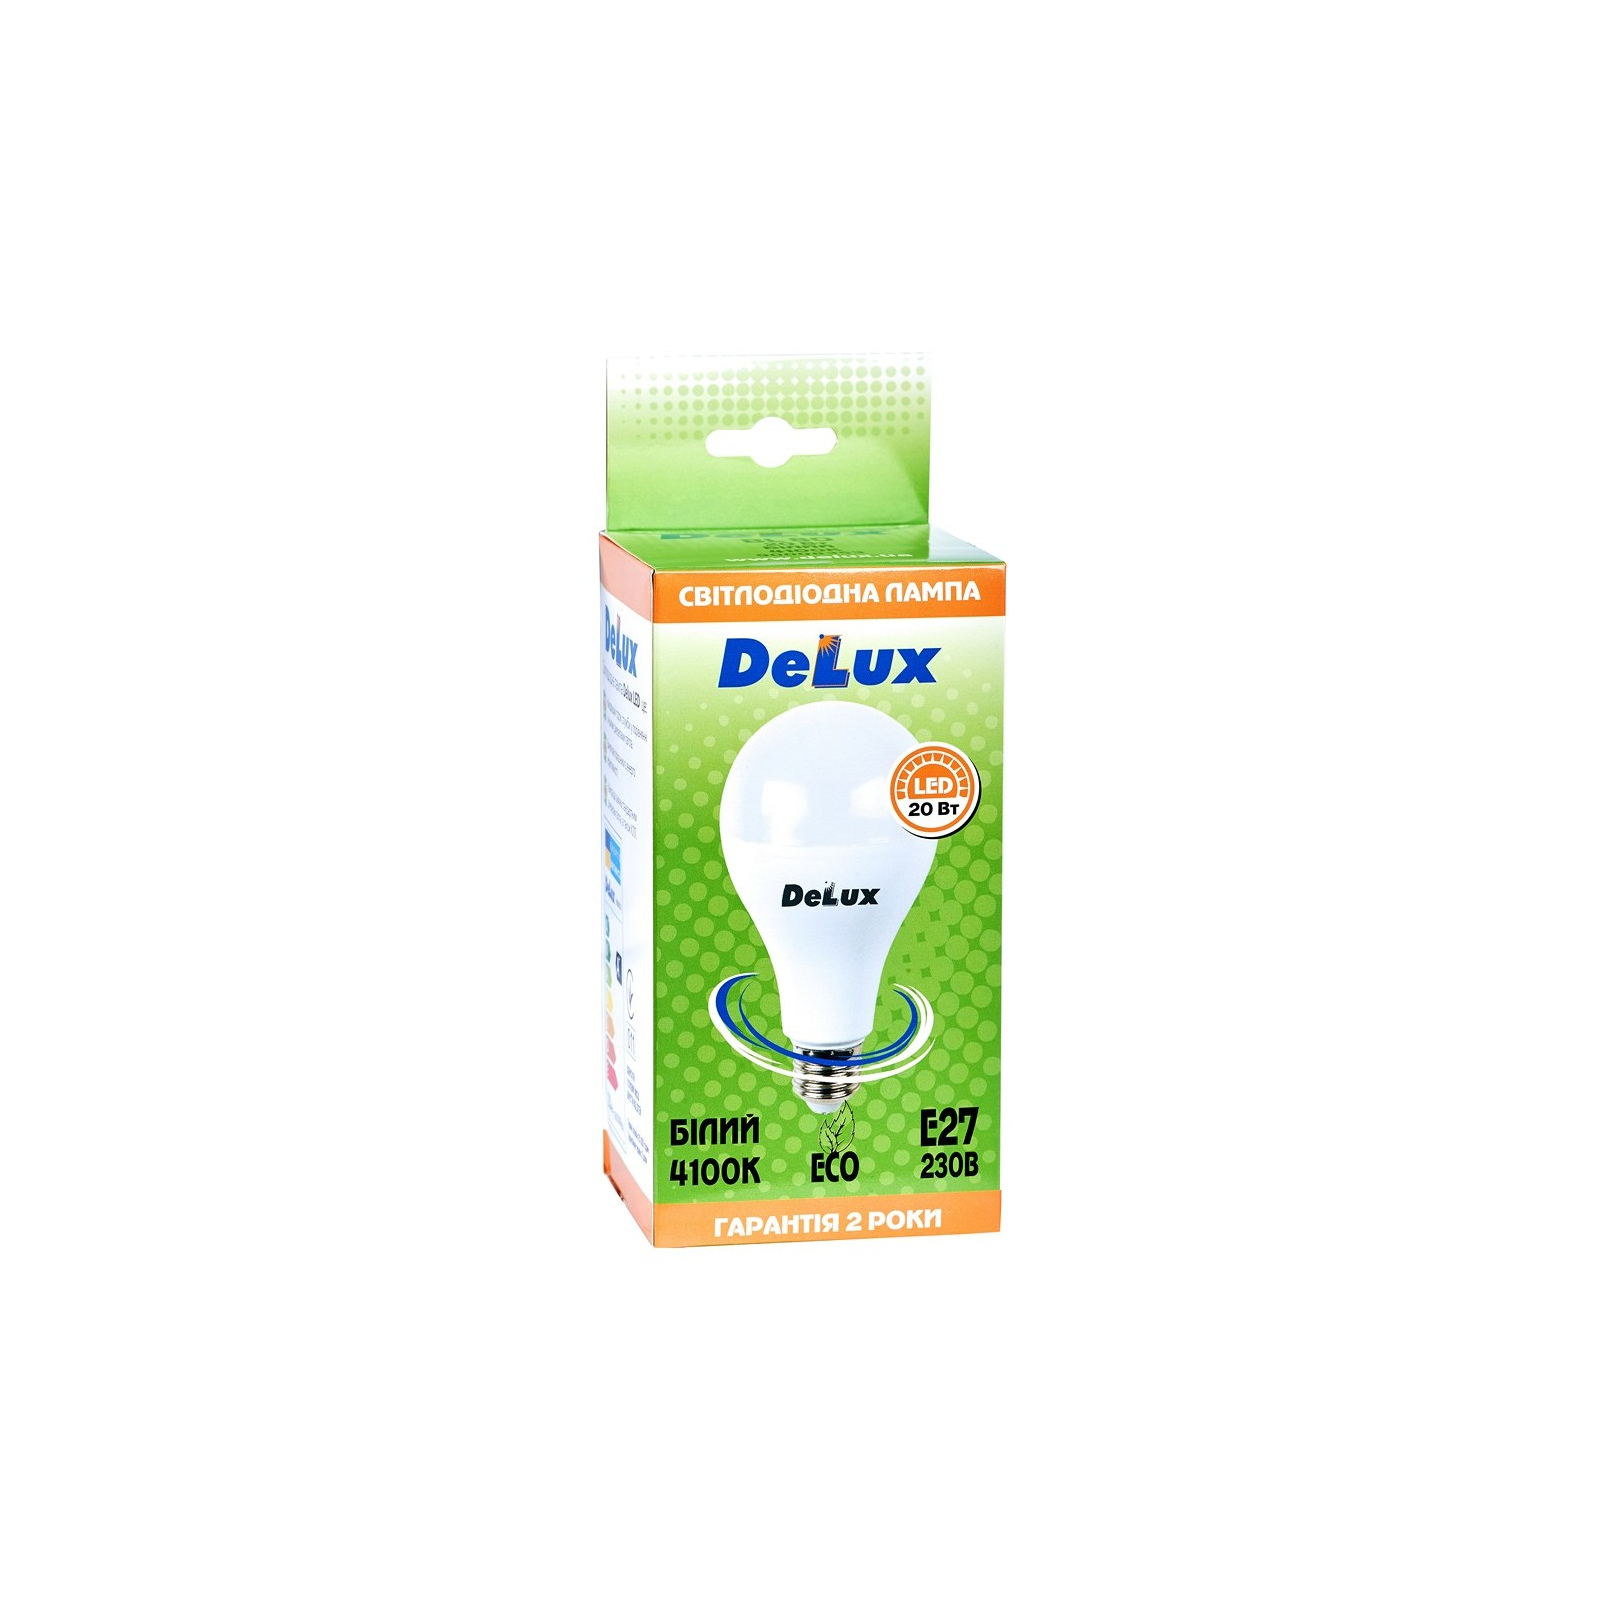 Лампочка Delux BL 80 20 Вт 4100K (90020553) изображение 2